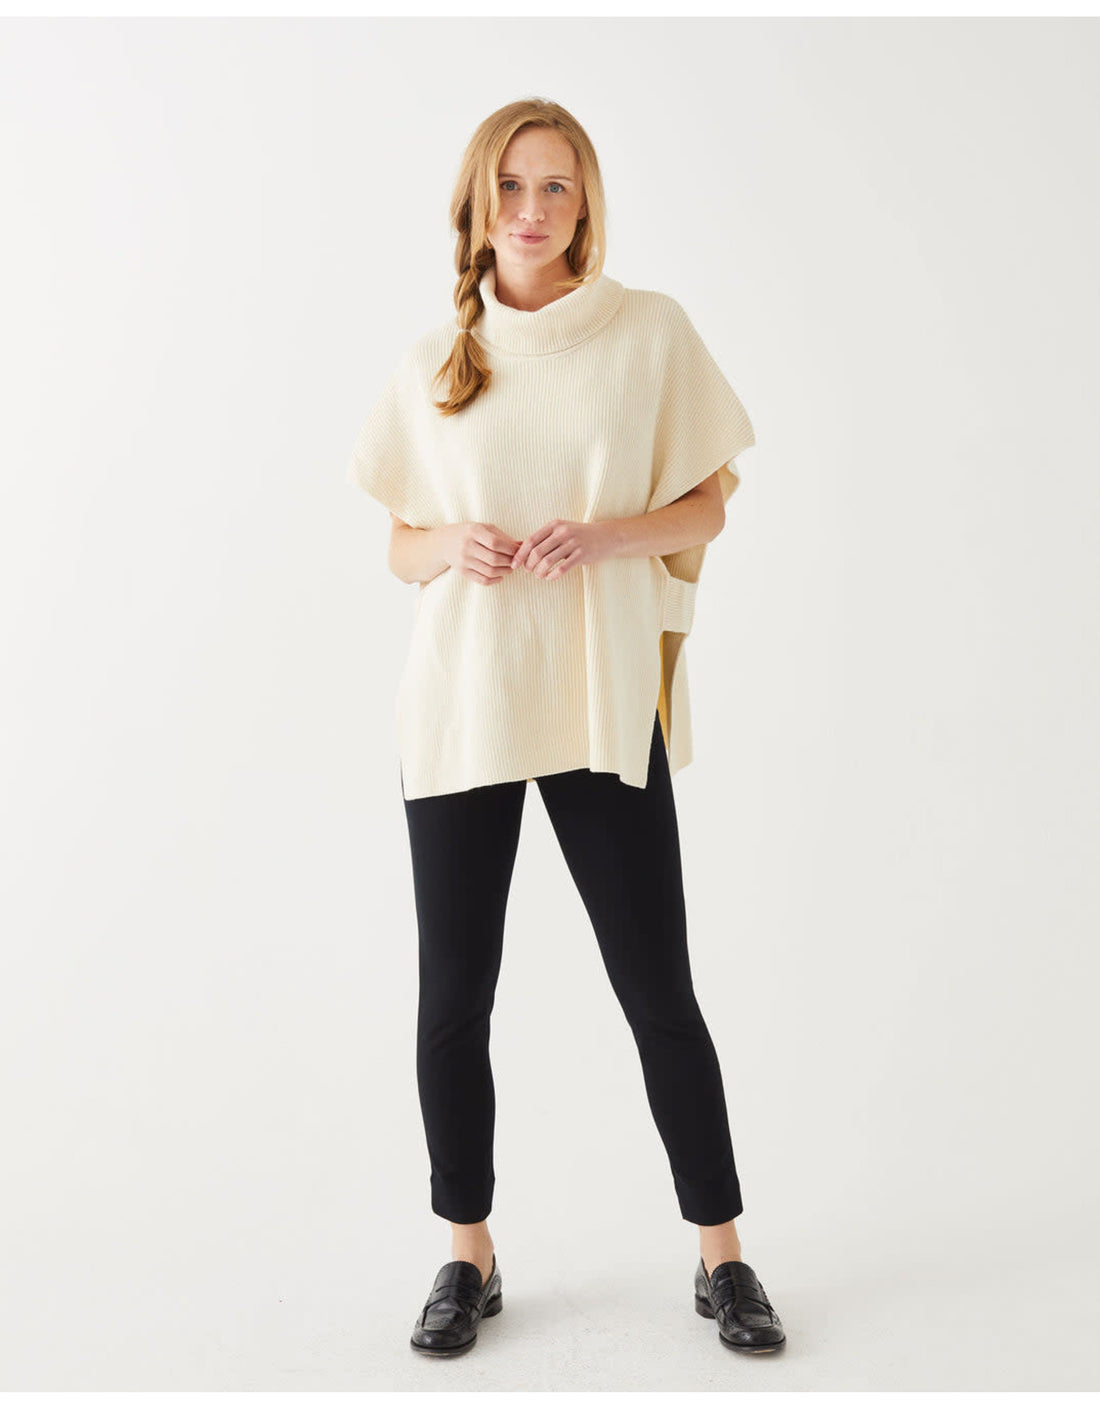 MerSea Anywear Winter Wheat Sweater Vest